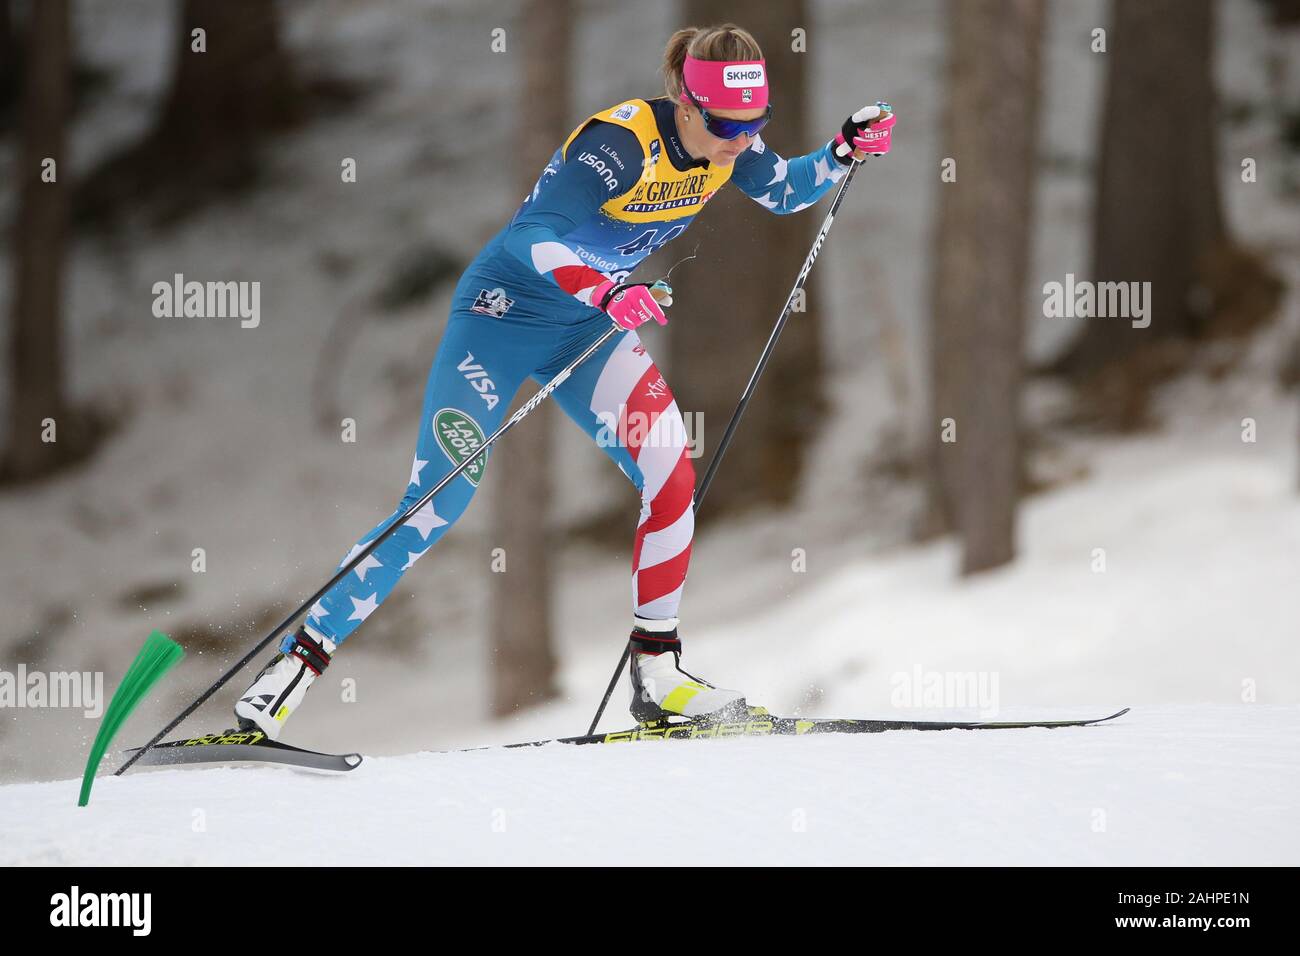 Sadie Bjornsen (USA) durante le donne 15 km di inizio intervallo libero della FIS Tour de Ski - Cross Country Ski World Cup 2019-20 su dicembre 31, 2019 di Dobbiaco Dobbiaco, Italia. Foto: Pierre Teyssot/Espa-Images Foto Stock